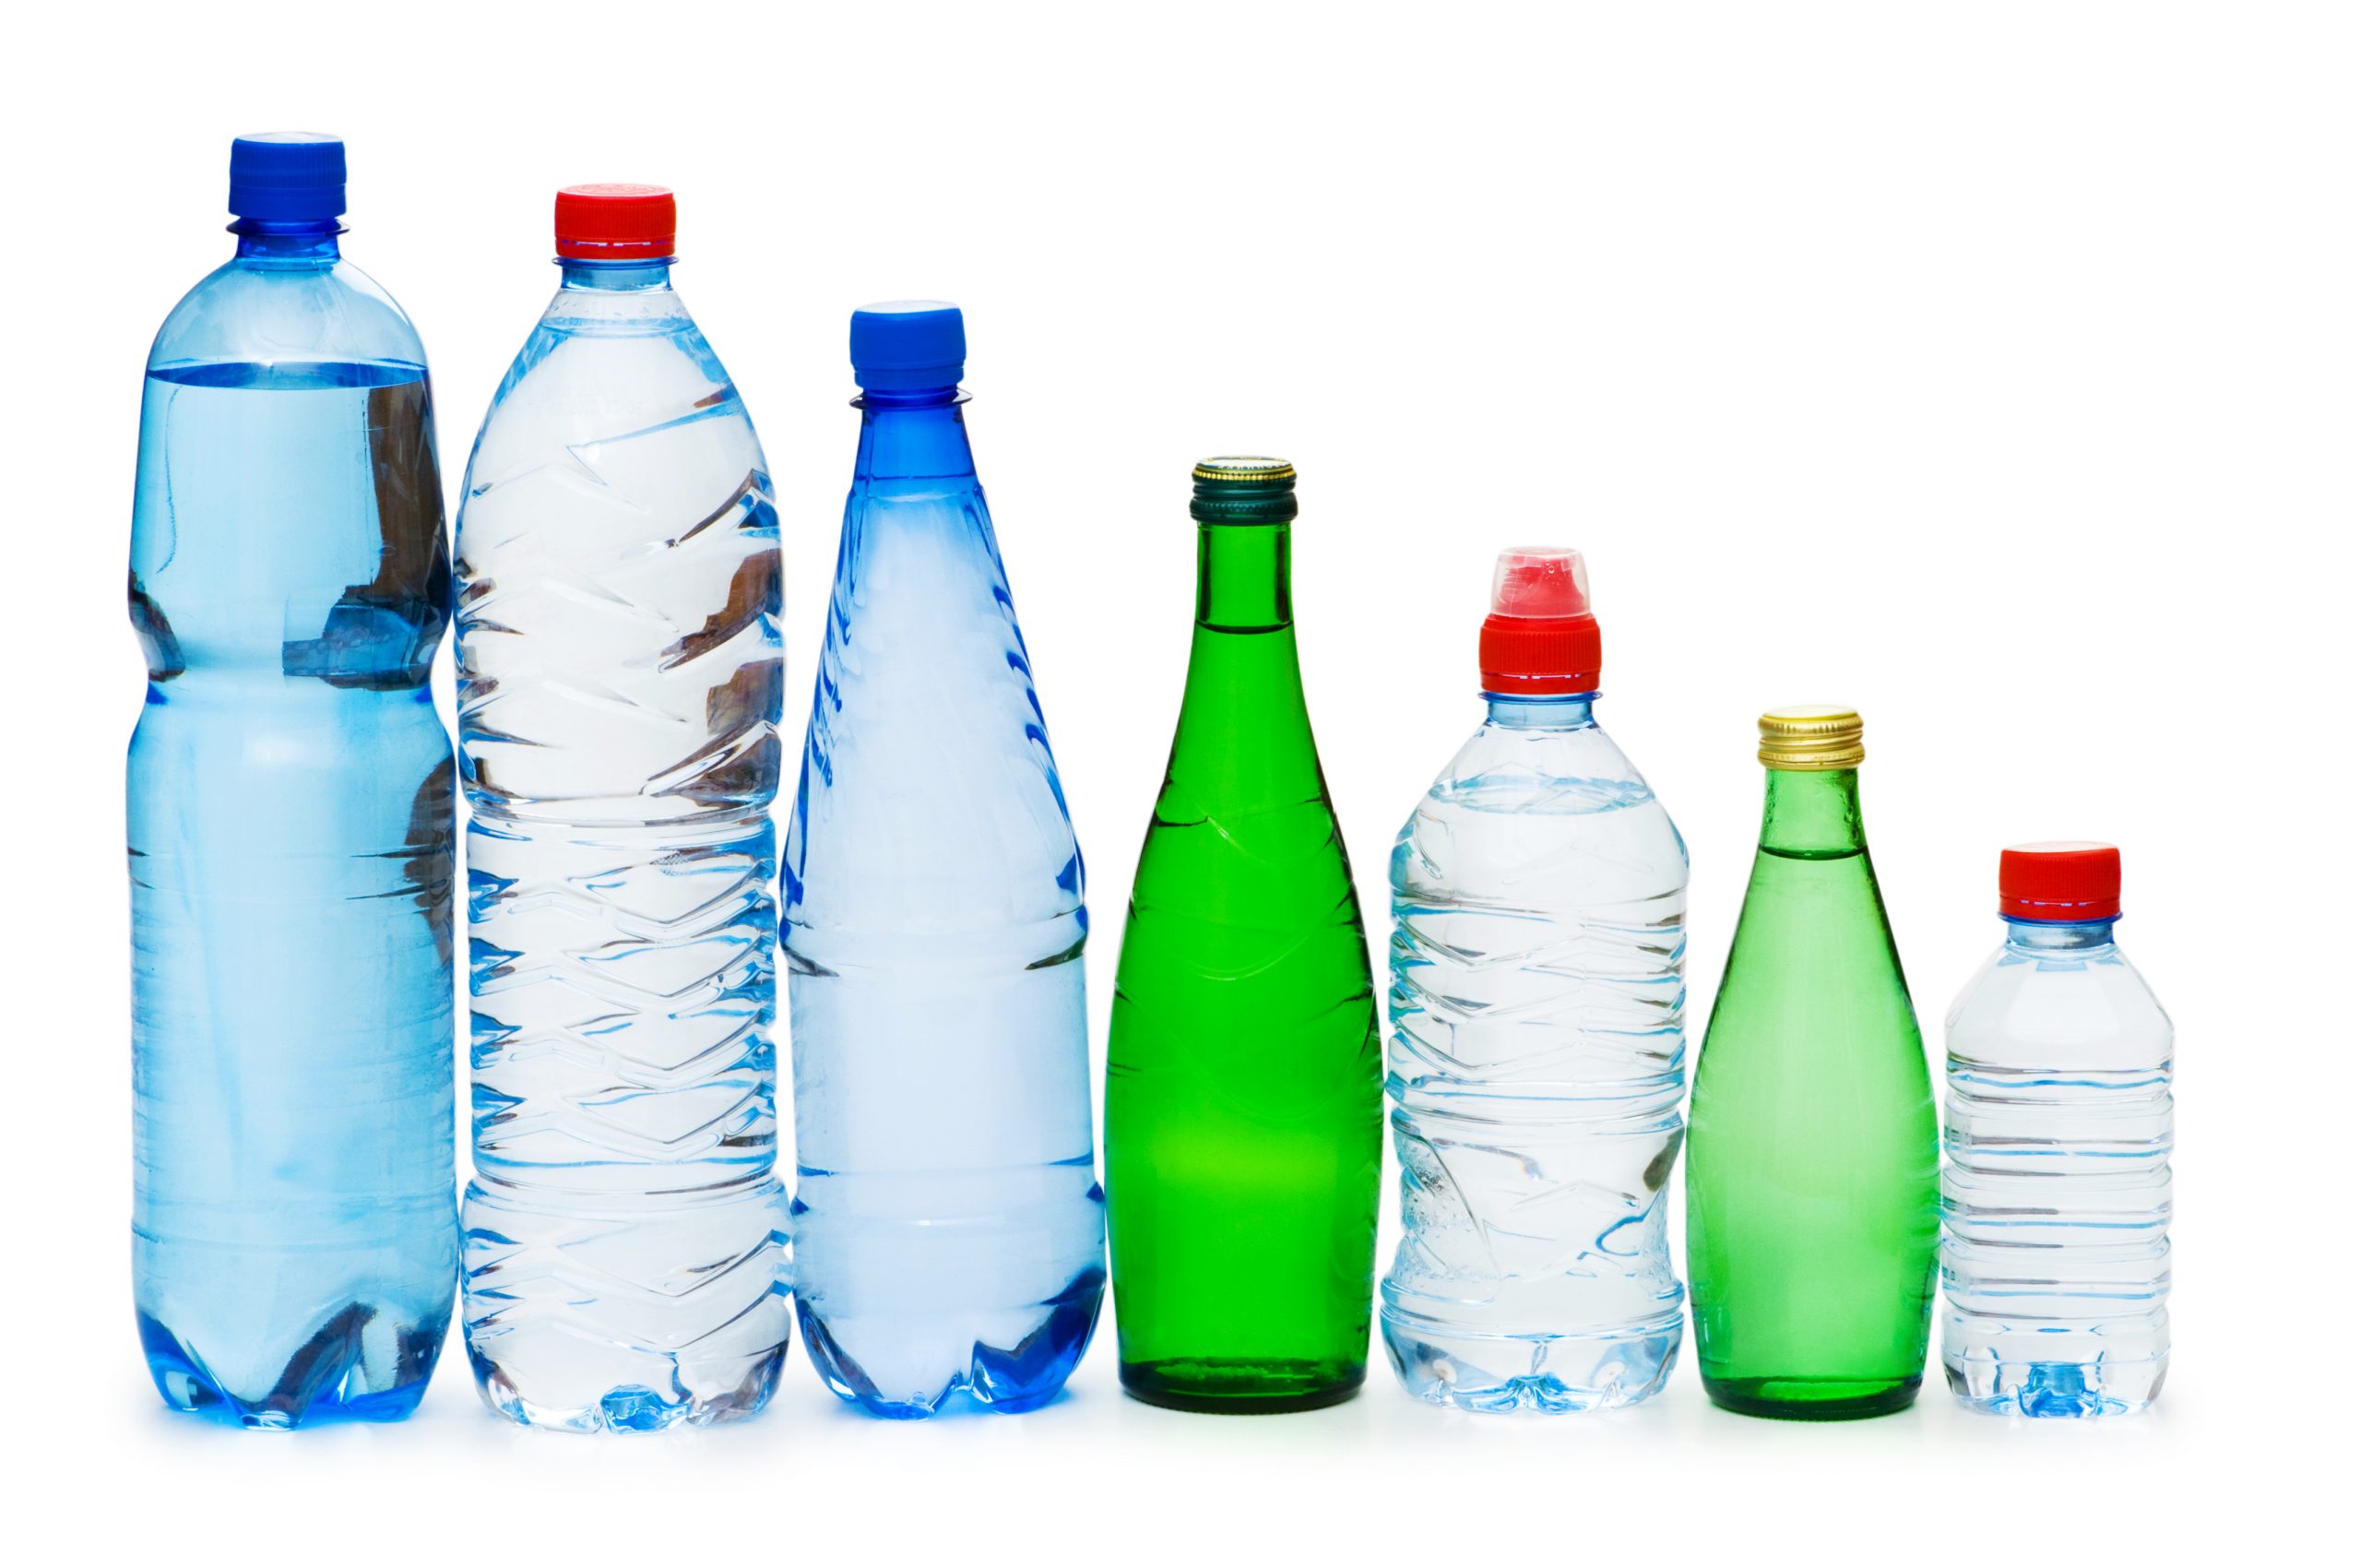 Зачем на бутылках с питьевой водой указывают срок годности? Она может испортиться?